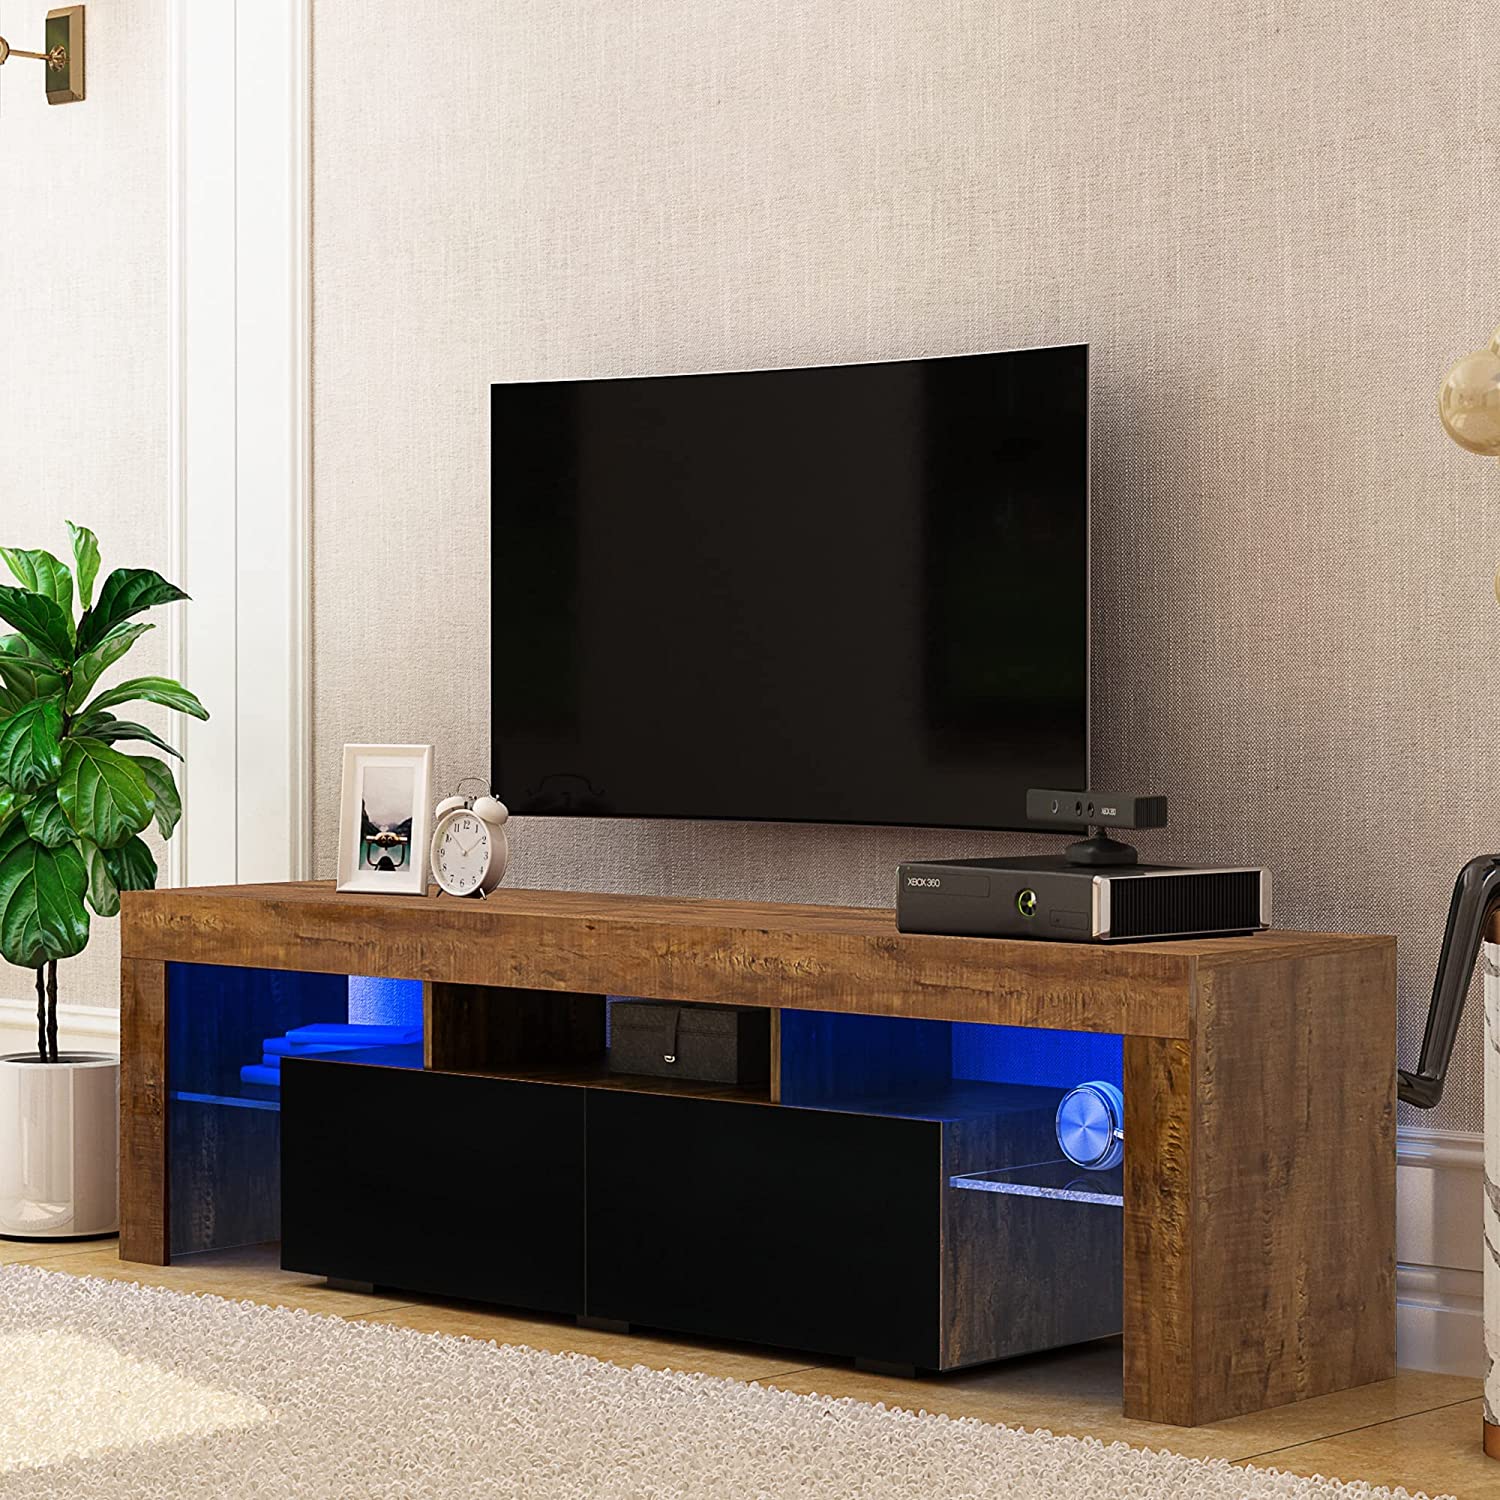 Soporte de TV LED Soportes de televisión de alto brillo Luces LED RGB Soporte de TV rústico de madera TV Gabinete de TV para juegos para sala de estar Dormitorio